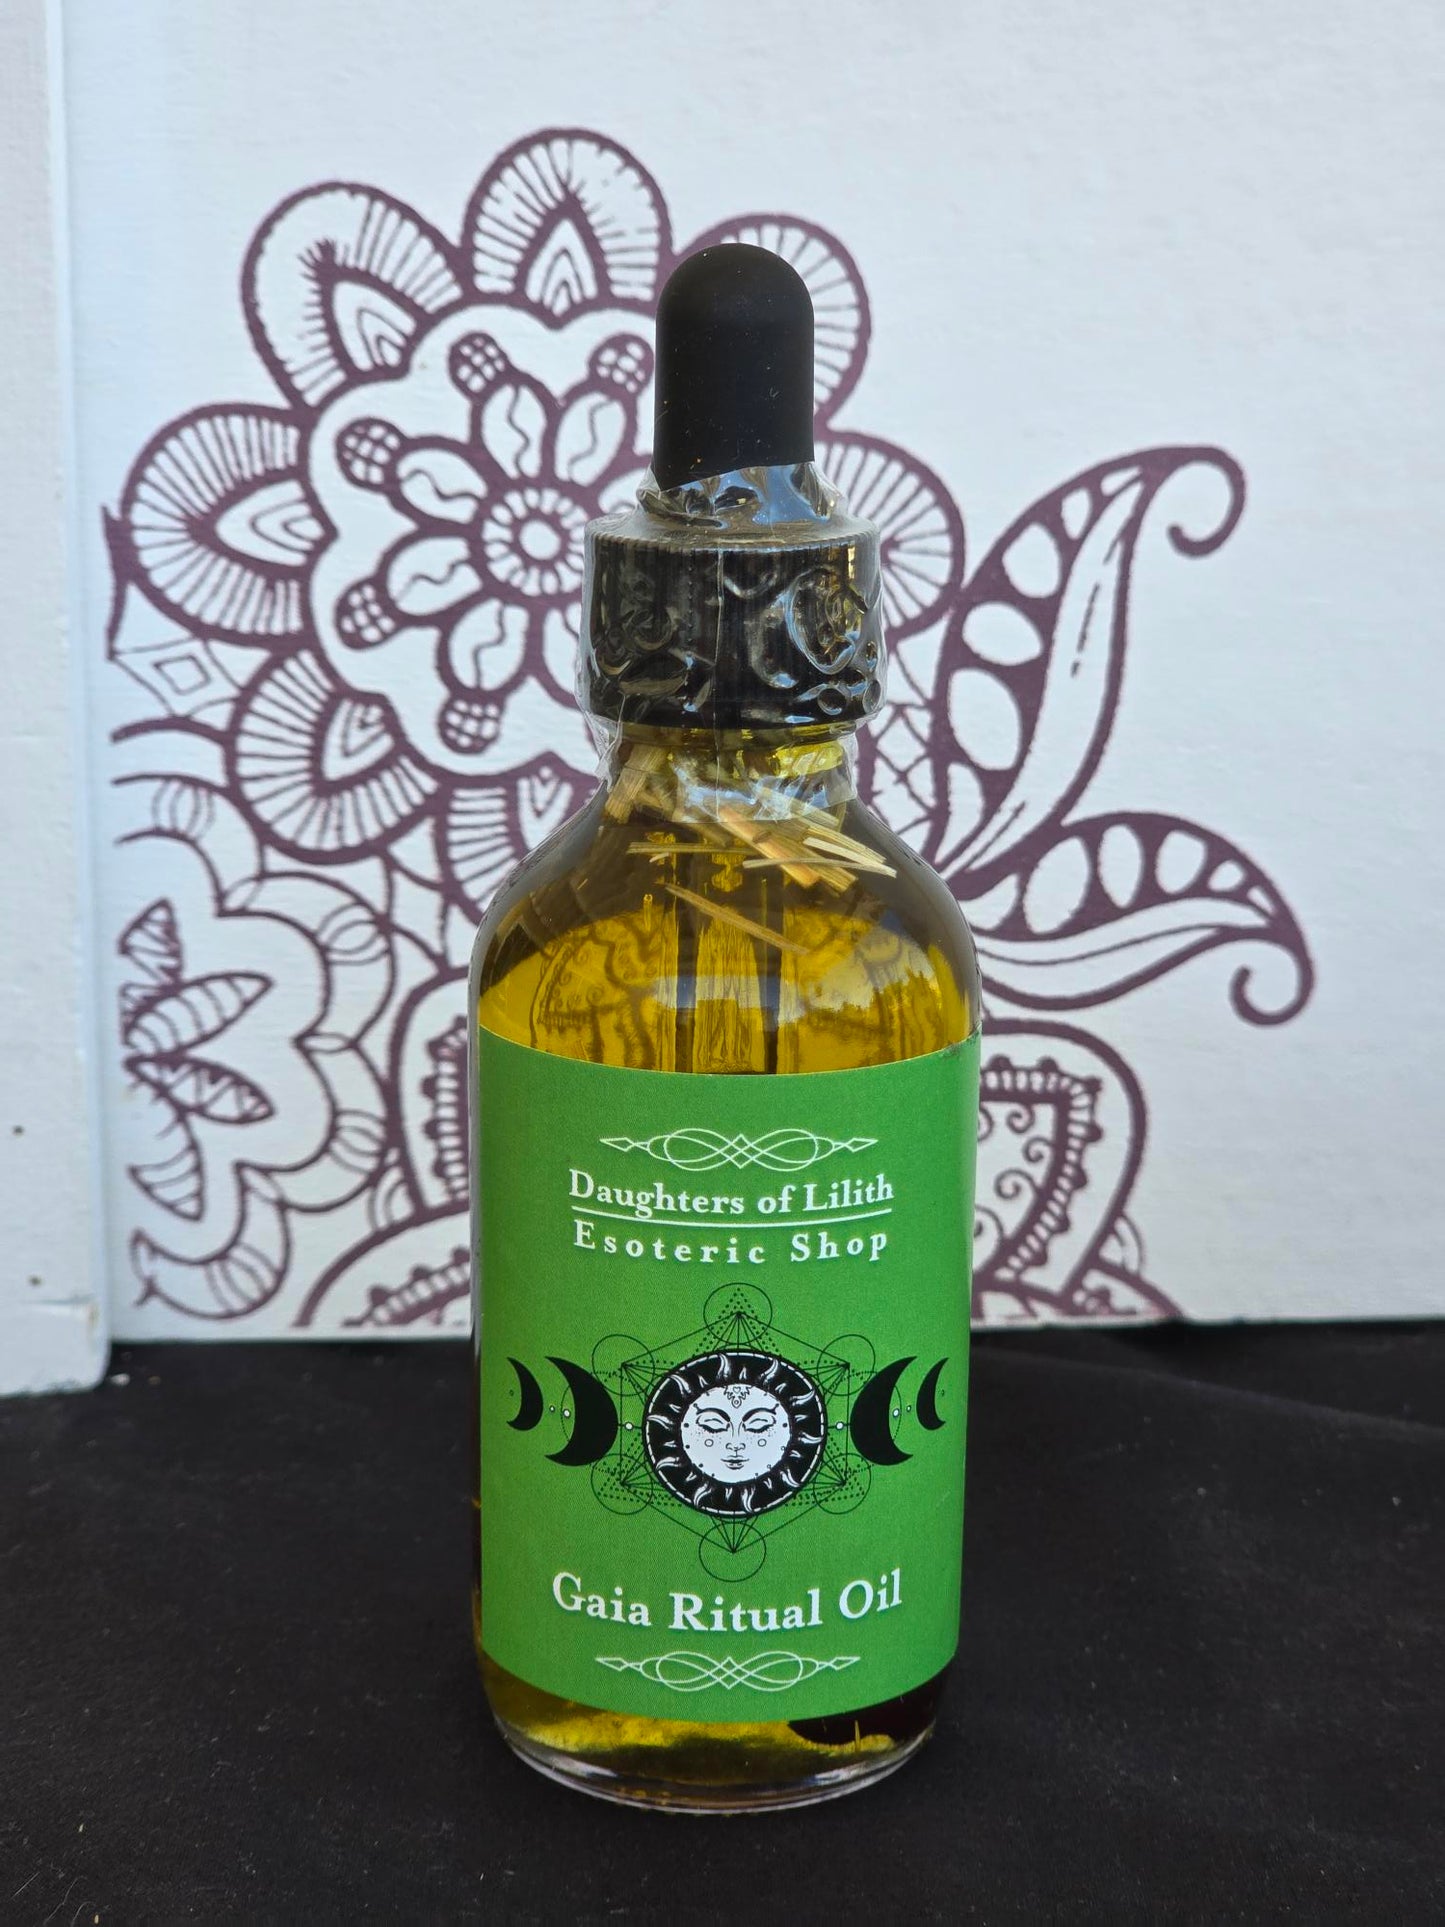 Gaia Ritual Oil